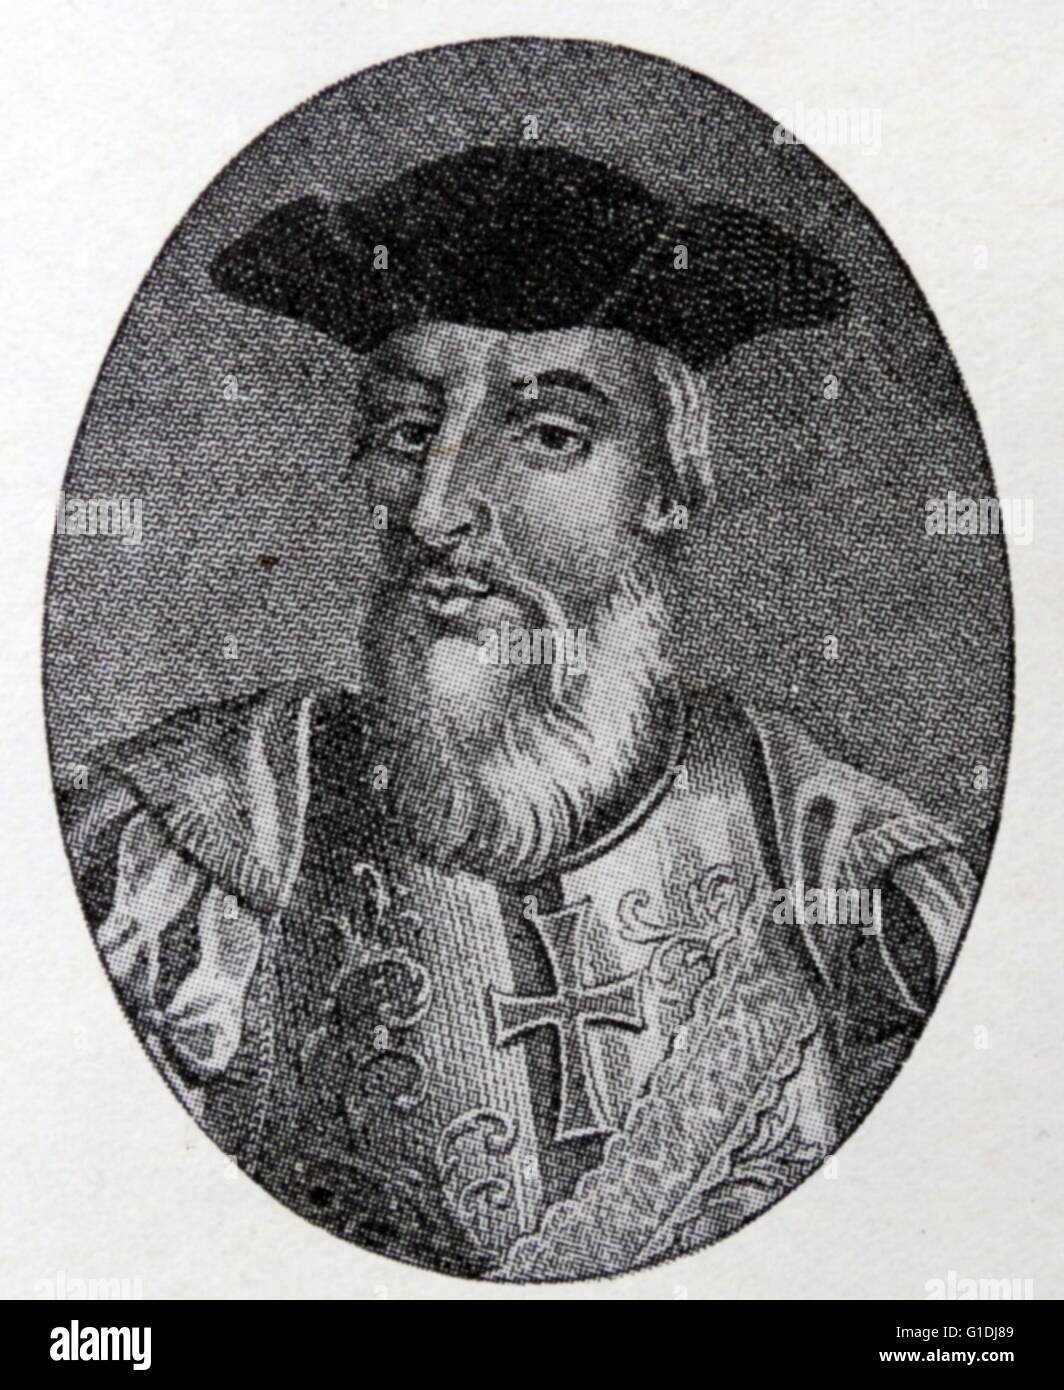 Vasco da Gama, premier comte de Vidigueira, (ch. 1460s - 1524)explorateur portugais. Il a été le premier Européen à atteindre l'Inde par la mer, reliant l'Europe et l'Asie pour la première fois par route maritime, ainsi que l'Atlantique et l'océan Indien entièrement et définitivement, et de cette façon, l'Occident et l'Orient. Cela a été accompli lors de son premier voyage en Inde (1497-1499). Banque D'Images